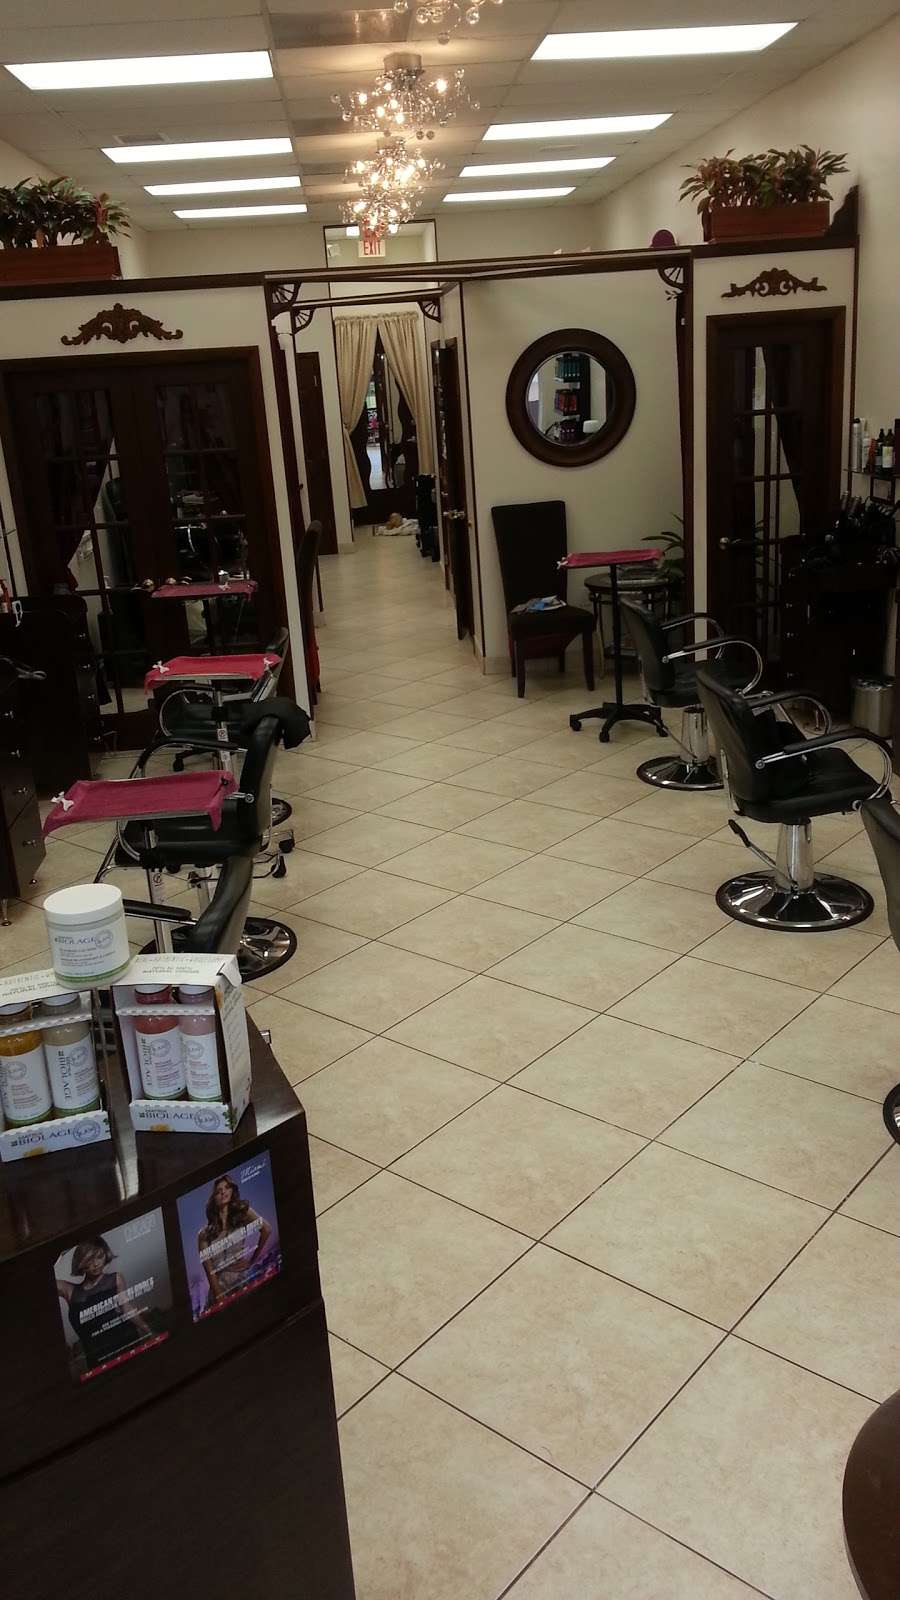 Moda Hair Salon | 4641 N, FL-7, Coral Springs, FL 33073, USA | Phone: (954) 825-0088